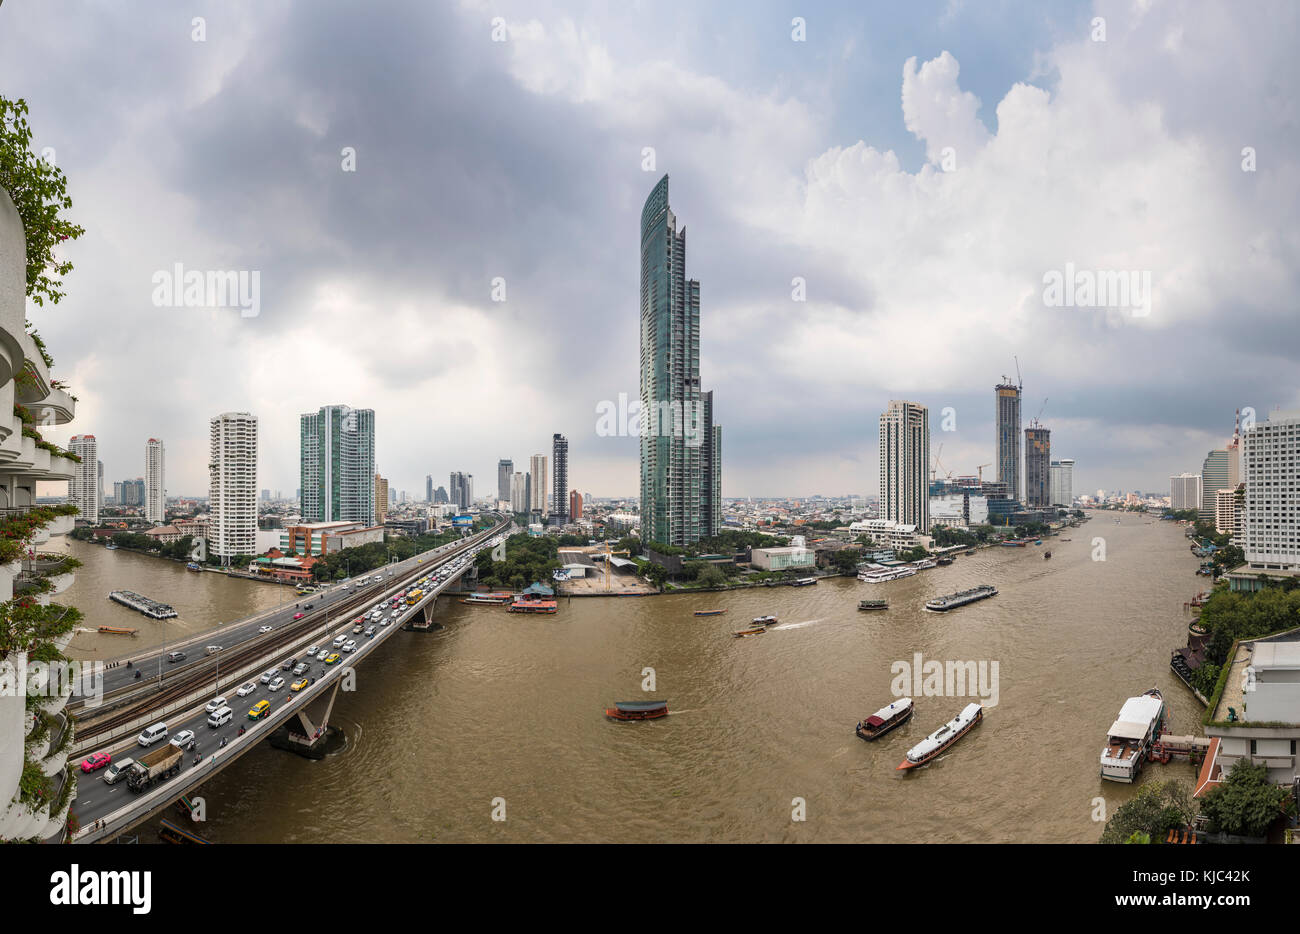 Krung Thon buri Road, le Roi Taksin Bridge sur la rivière Chao Phraya, gratte-ciel emblématique de la cisjordanie Khlong San district, Bangkok, Thaïlande Banque D'Images